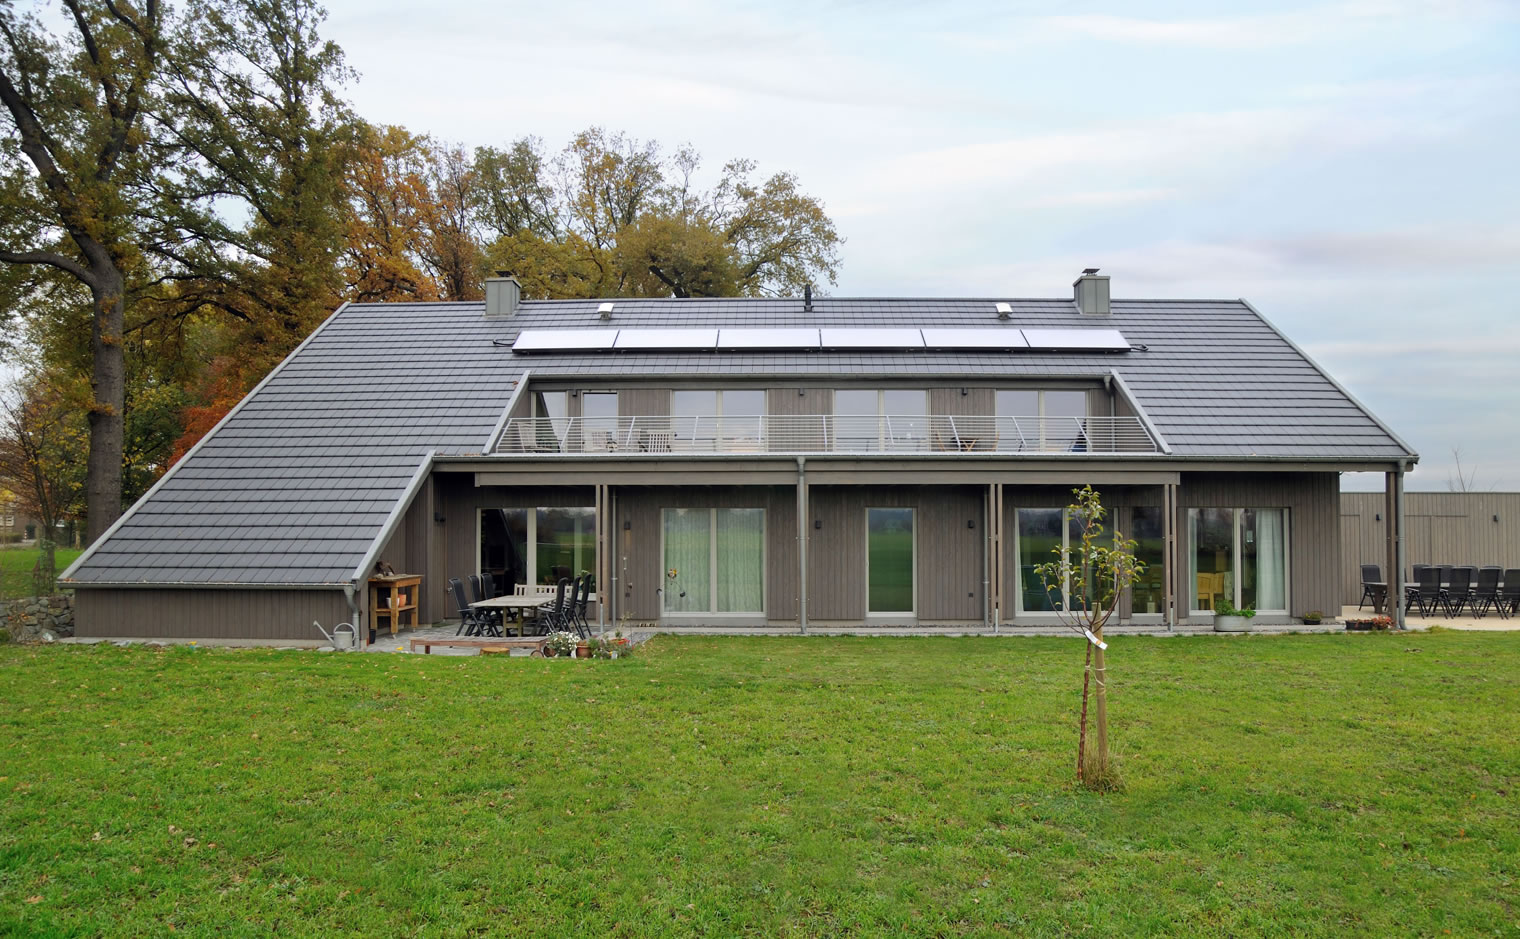 Familienliebling Heide, Soester Holzhaus